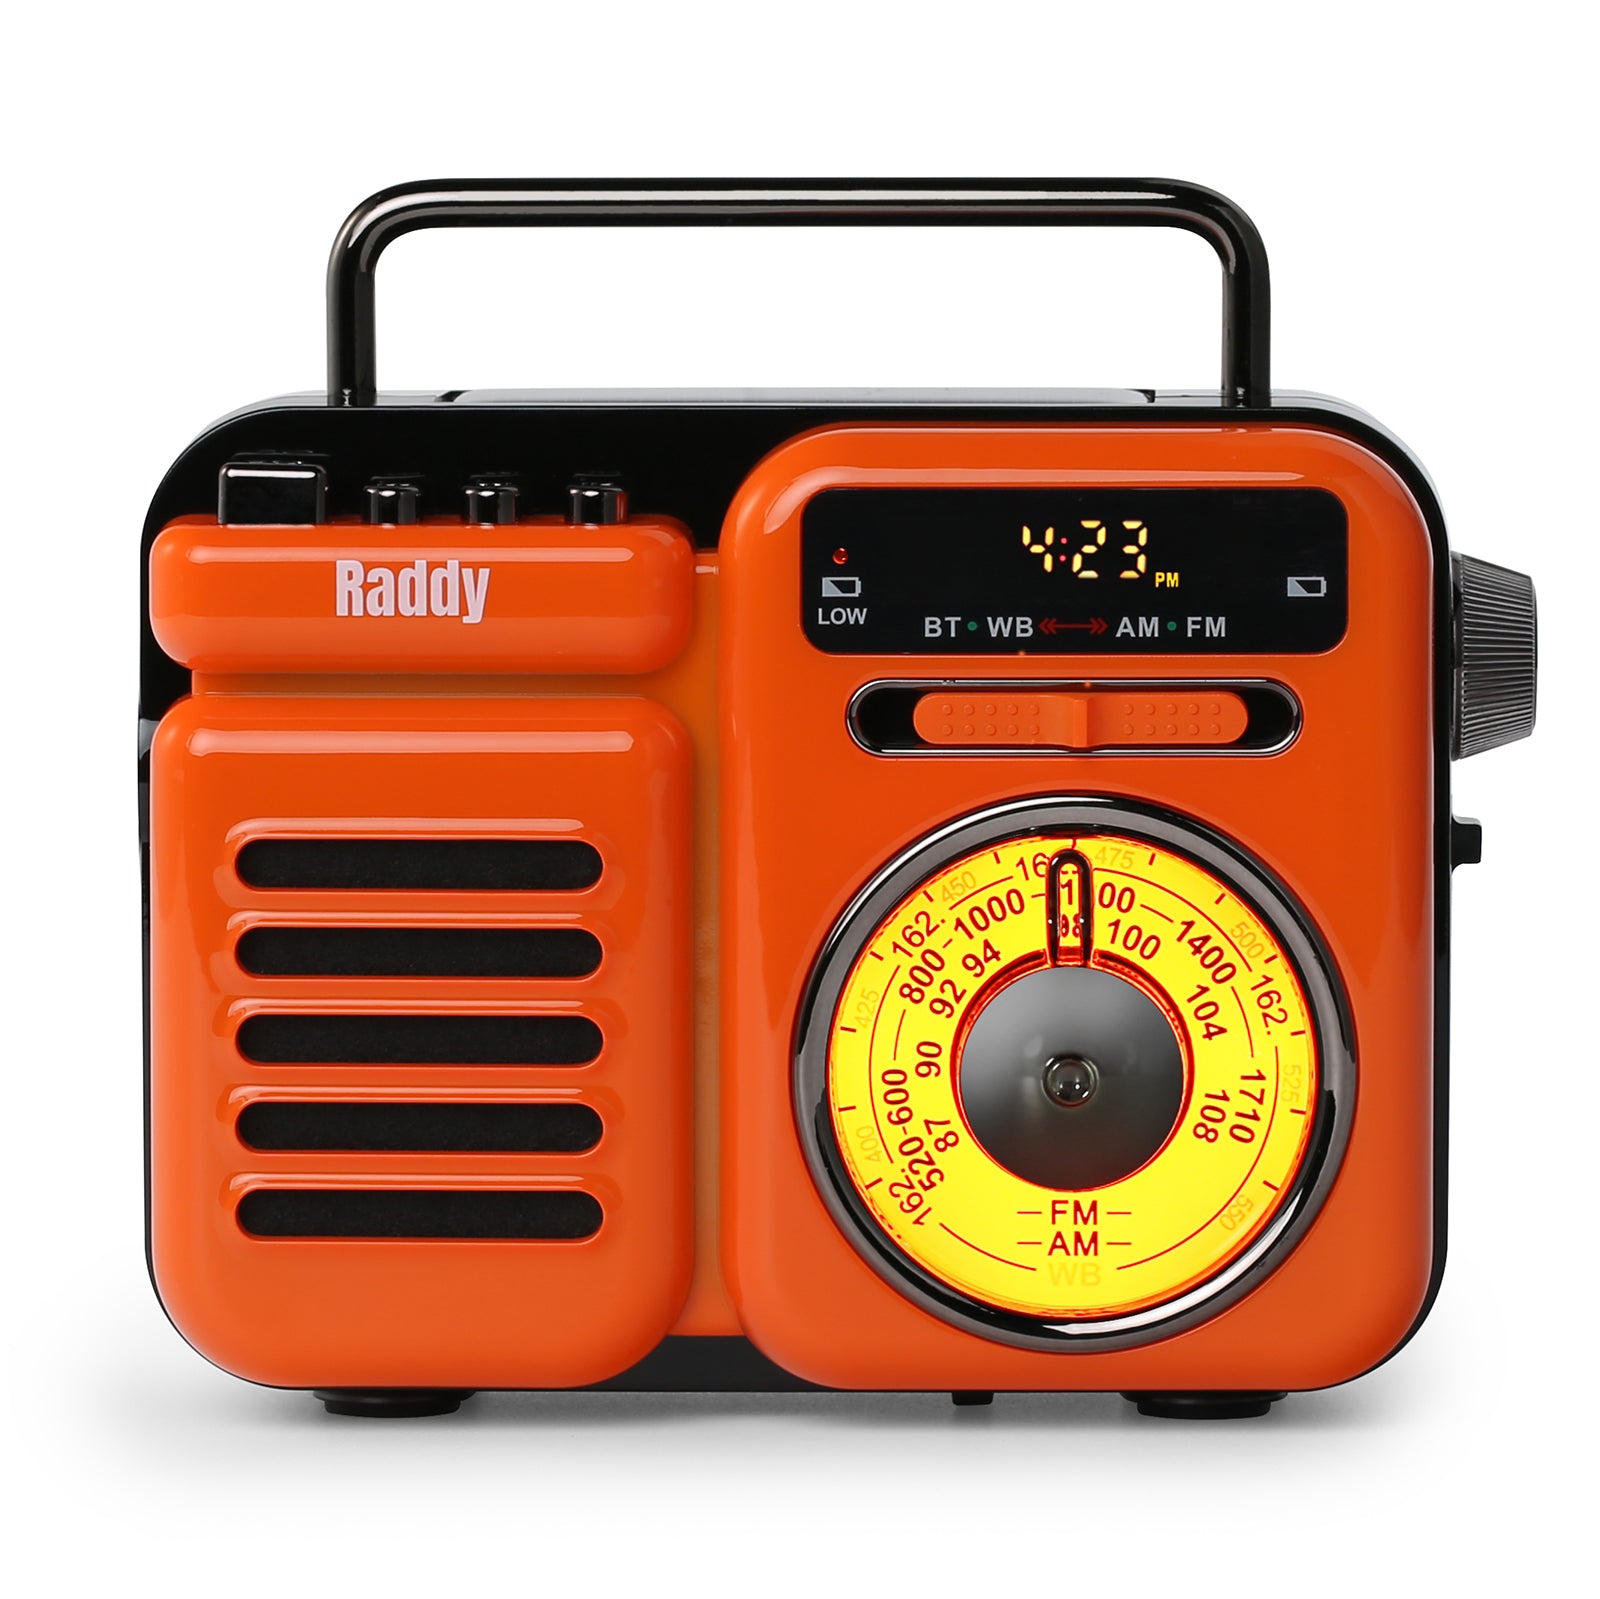 RW3 Emergency Radio - Raddy